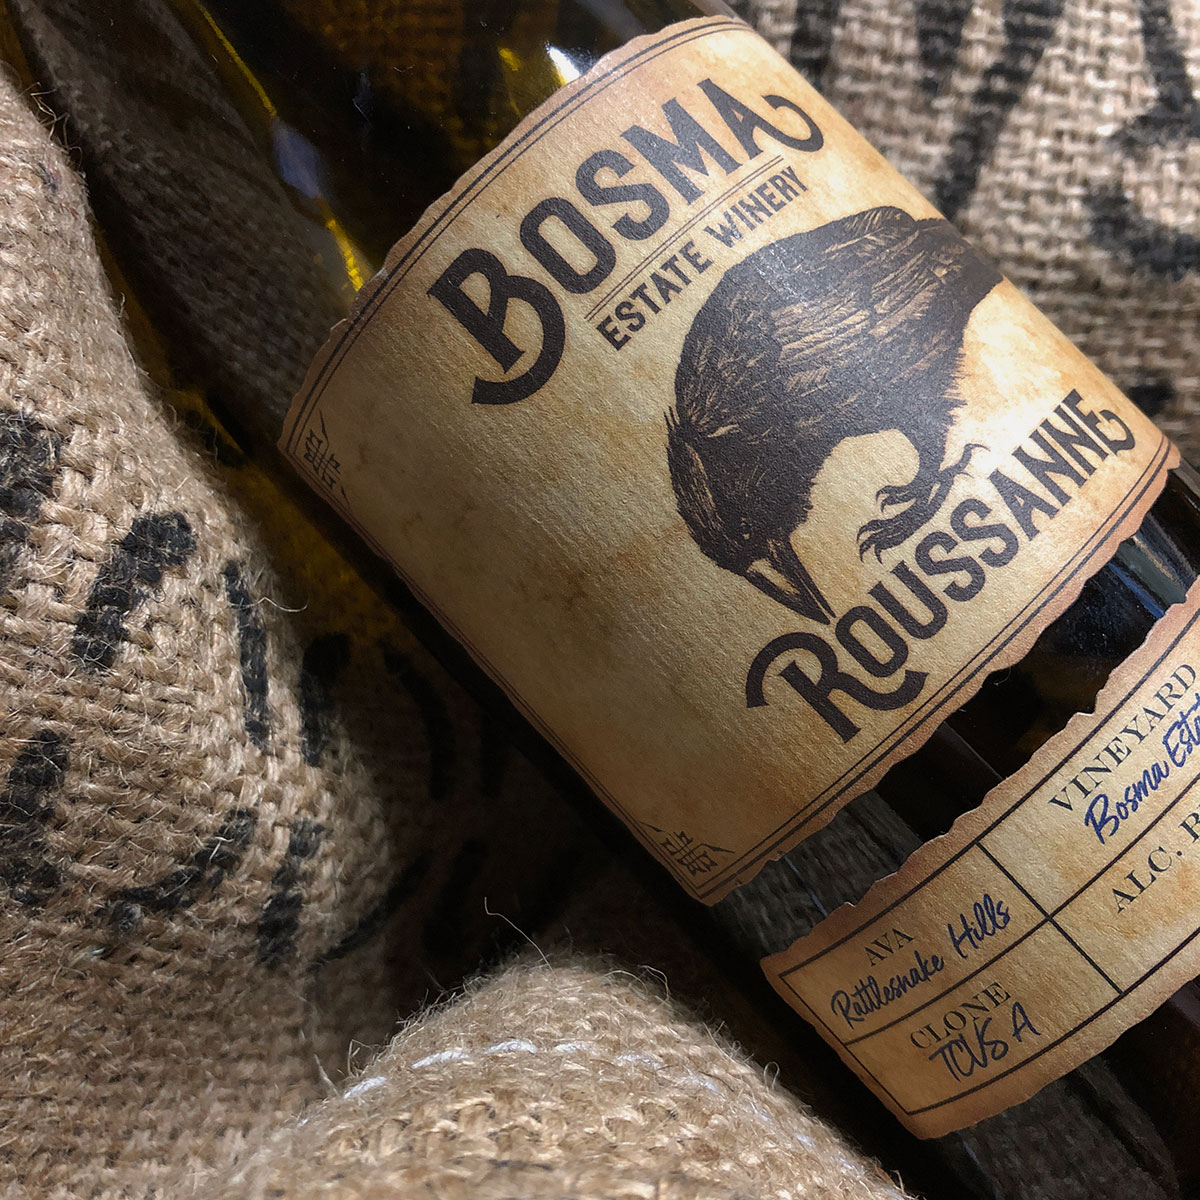 Bosma Estate Winery